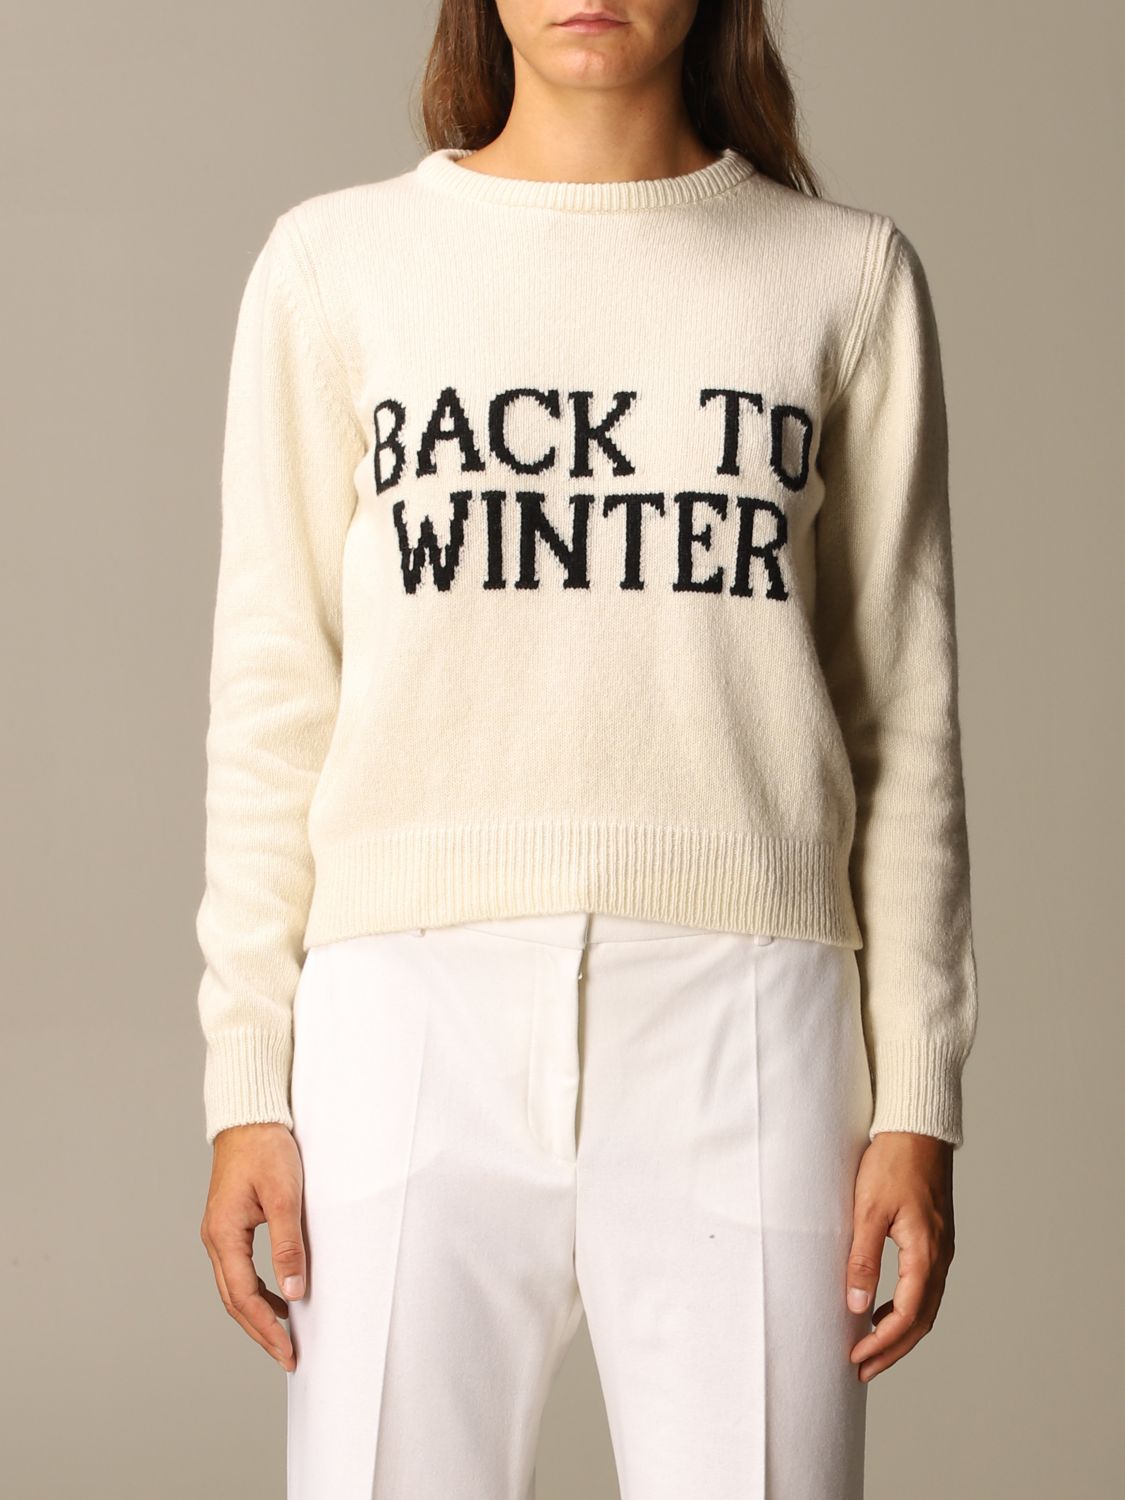 Alberta Ferretti Outlet: Back to winter cotton pullover - Beige | Alberta Ferretti sweater 0936 5107 online GIGLIO.COM